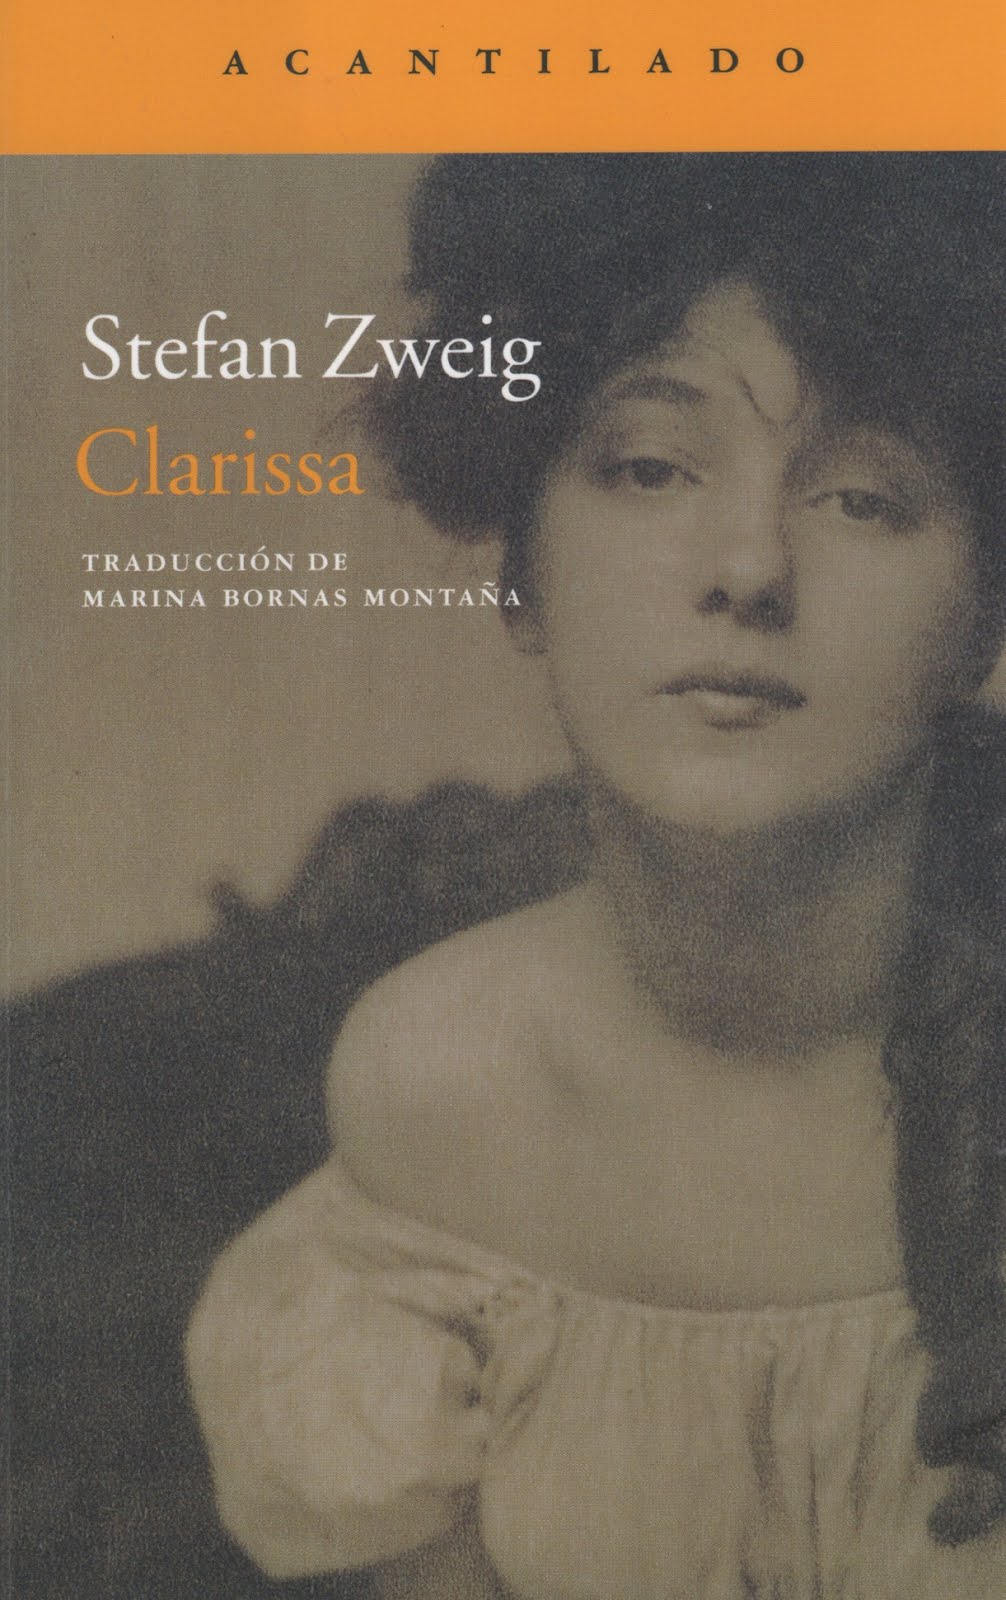 Stefan Zweig (Clarissa)